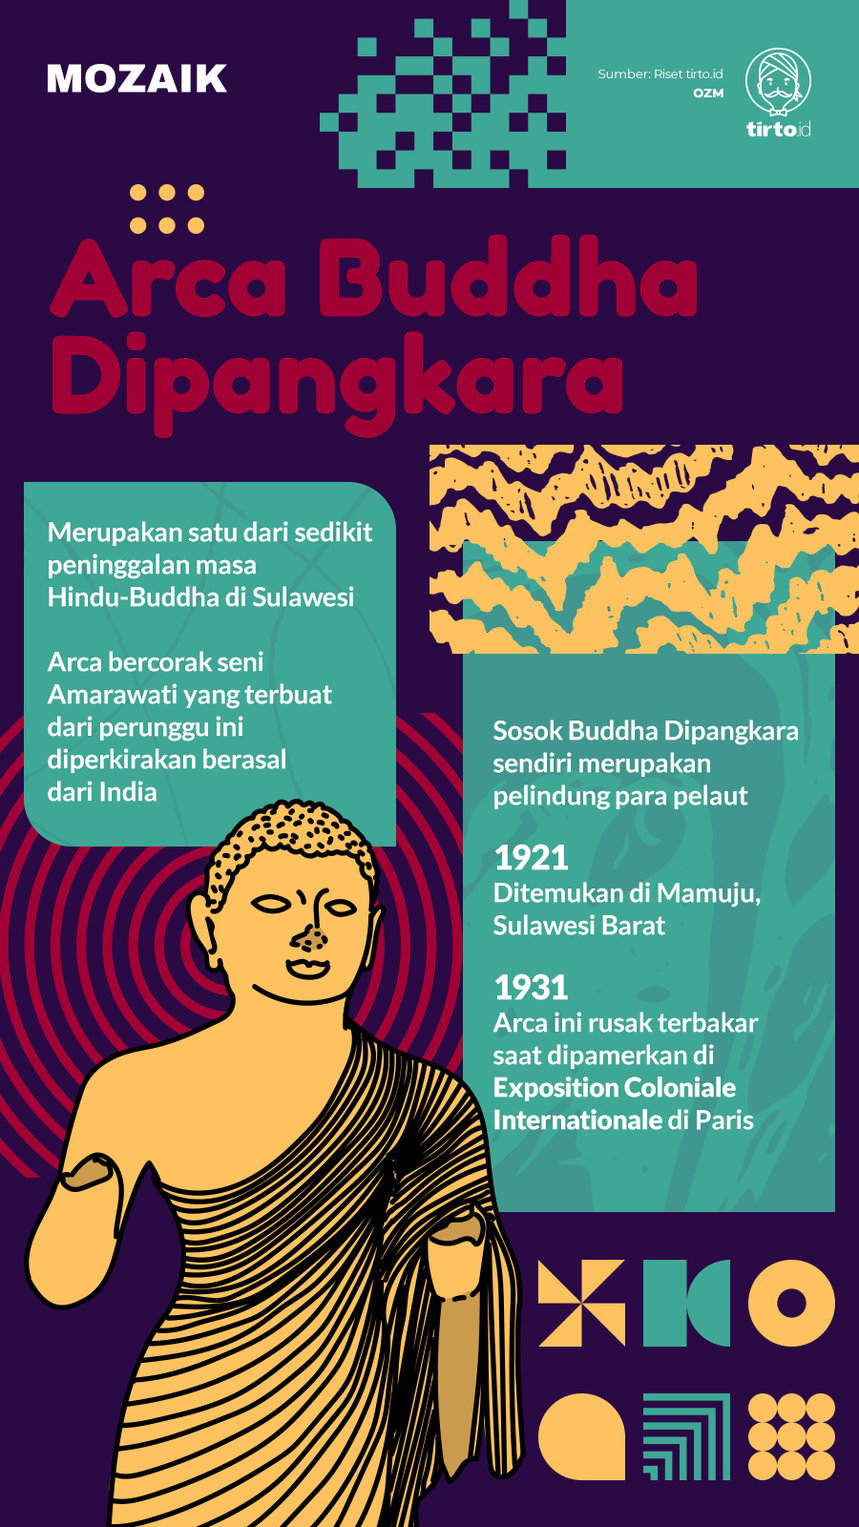 Infografik Mozaik Arca Buddha Dipangkara